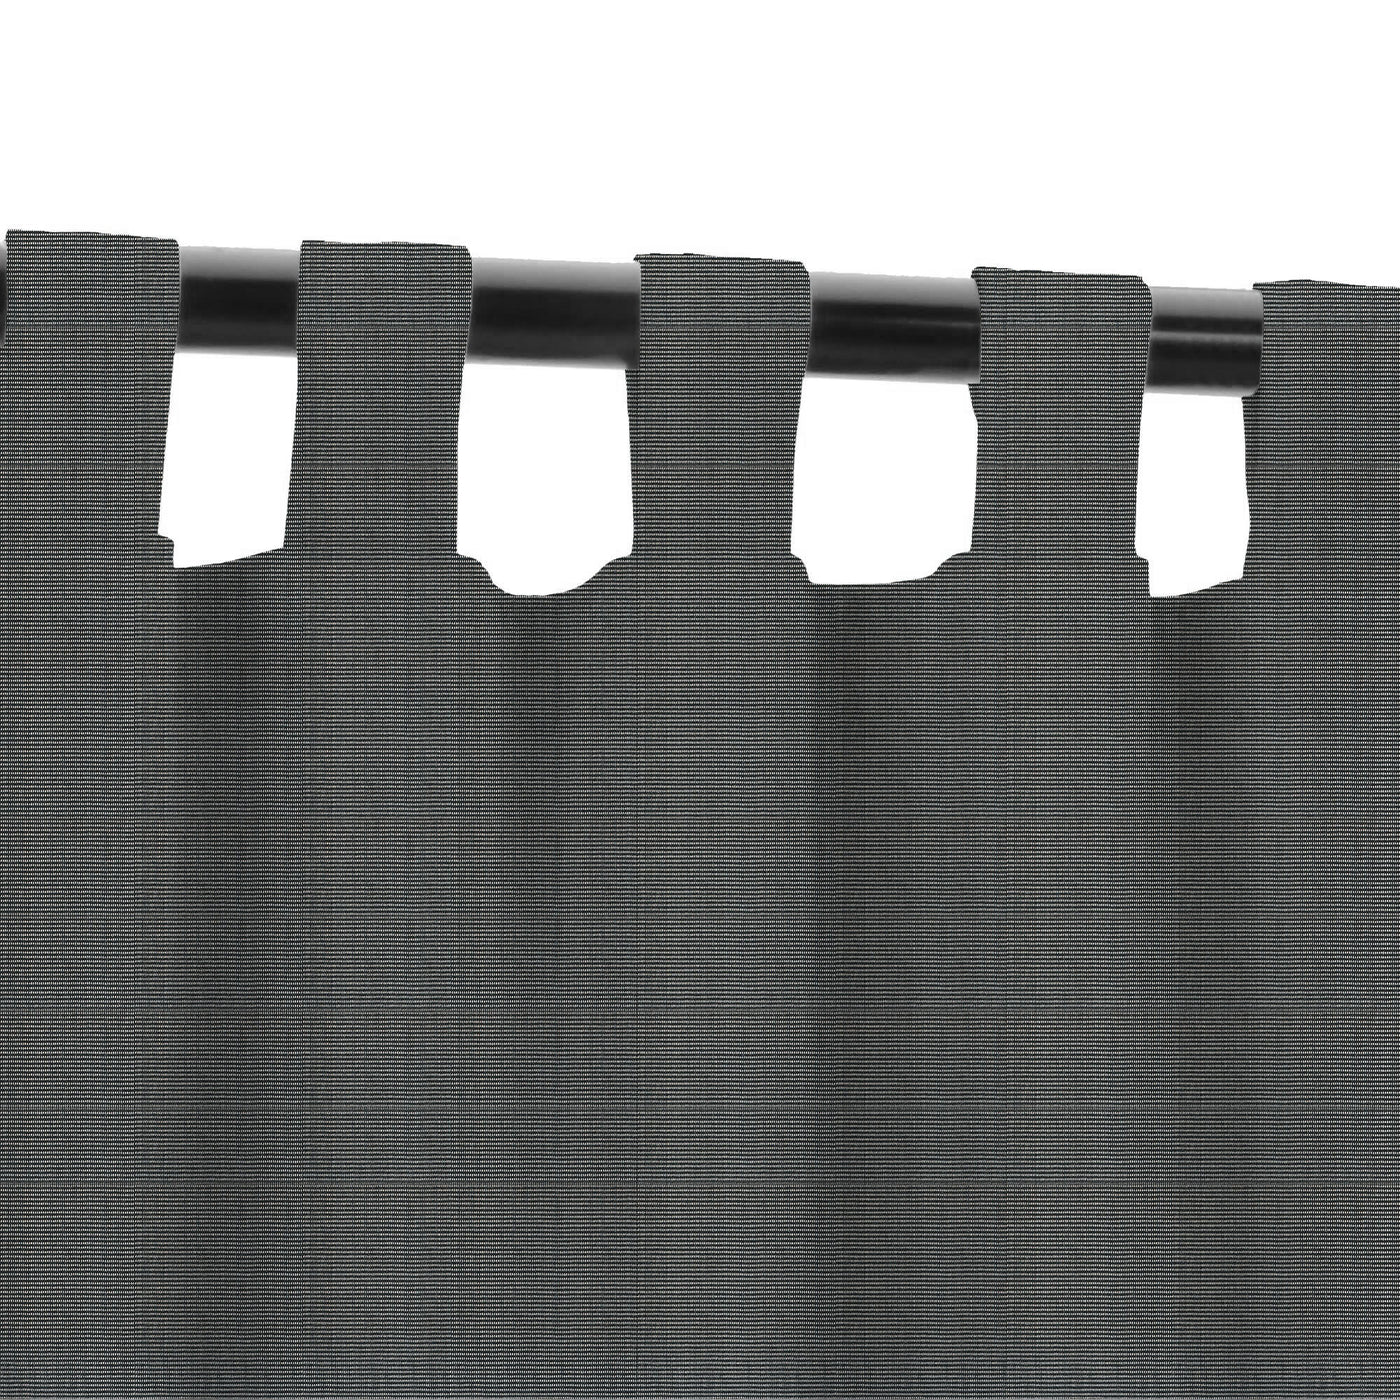 PENGI Outdoor Curtains Waterproof - Wire Black